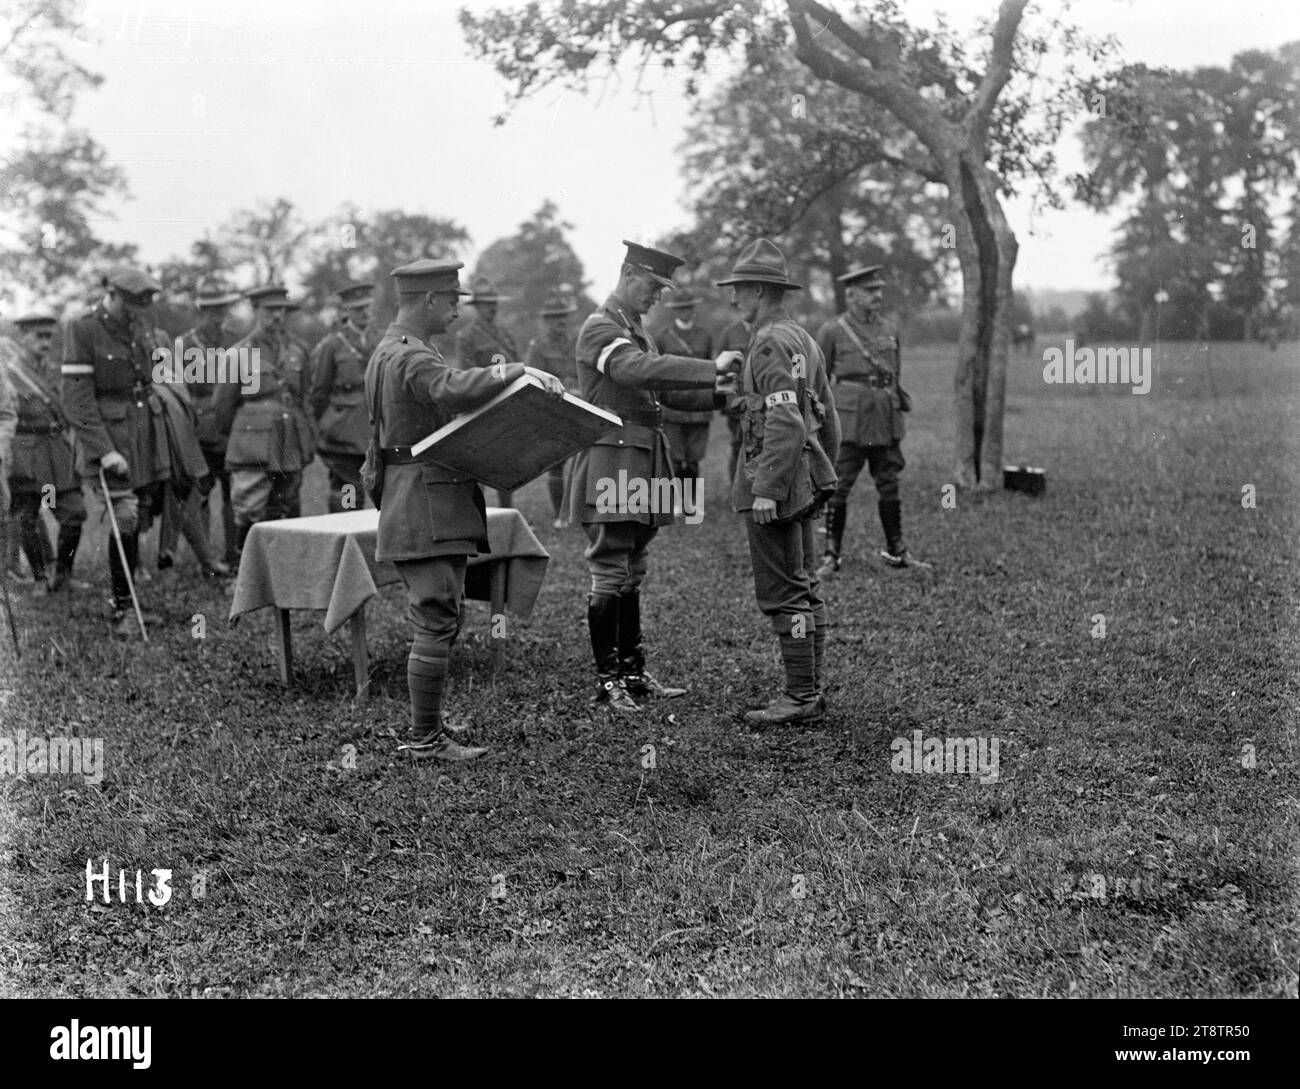 Remise des médailles par le général Godley, le général Godley remet une médaille à un soldat lors d'une cérémonie spéciale décorant des hommes de la Division Nouvelle-Zélande. Photographie prise le 8 juillet 1917 Banque D'Images